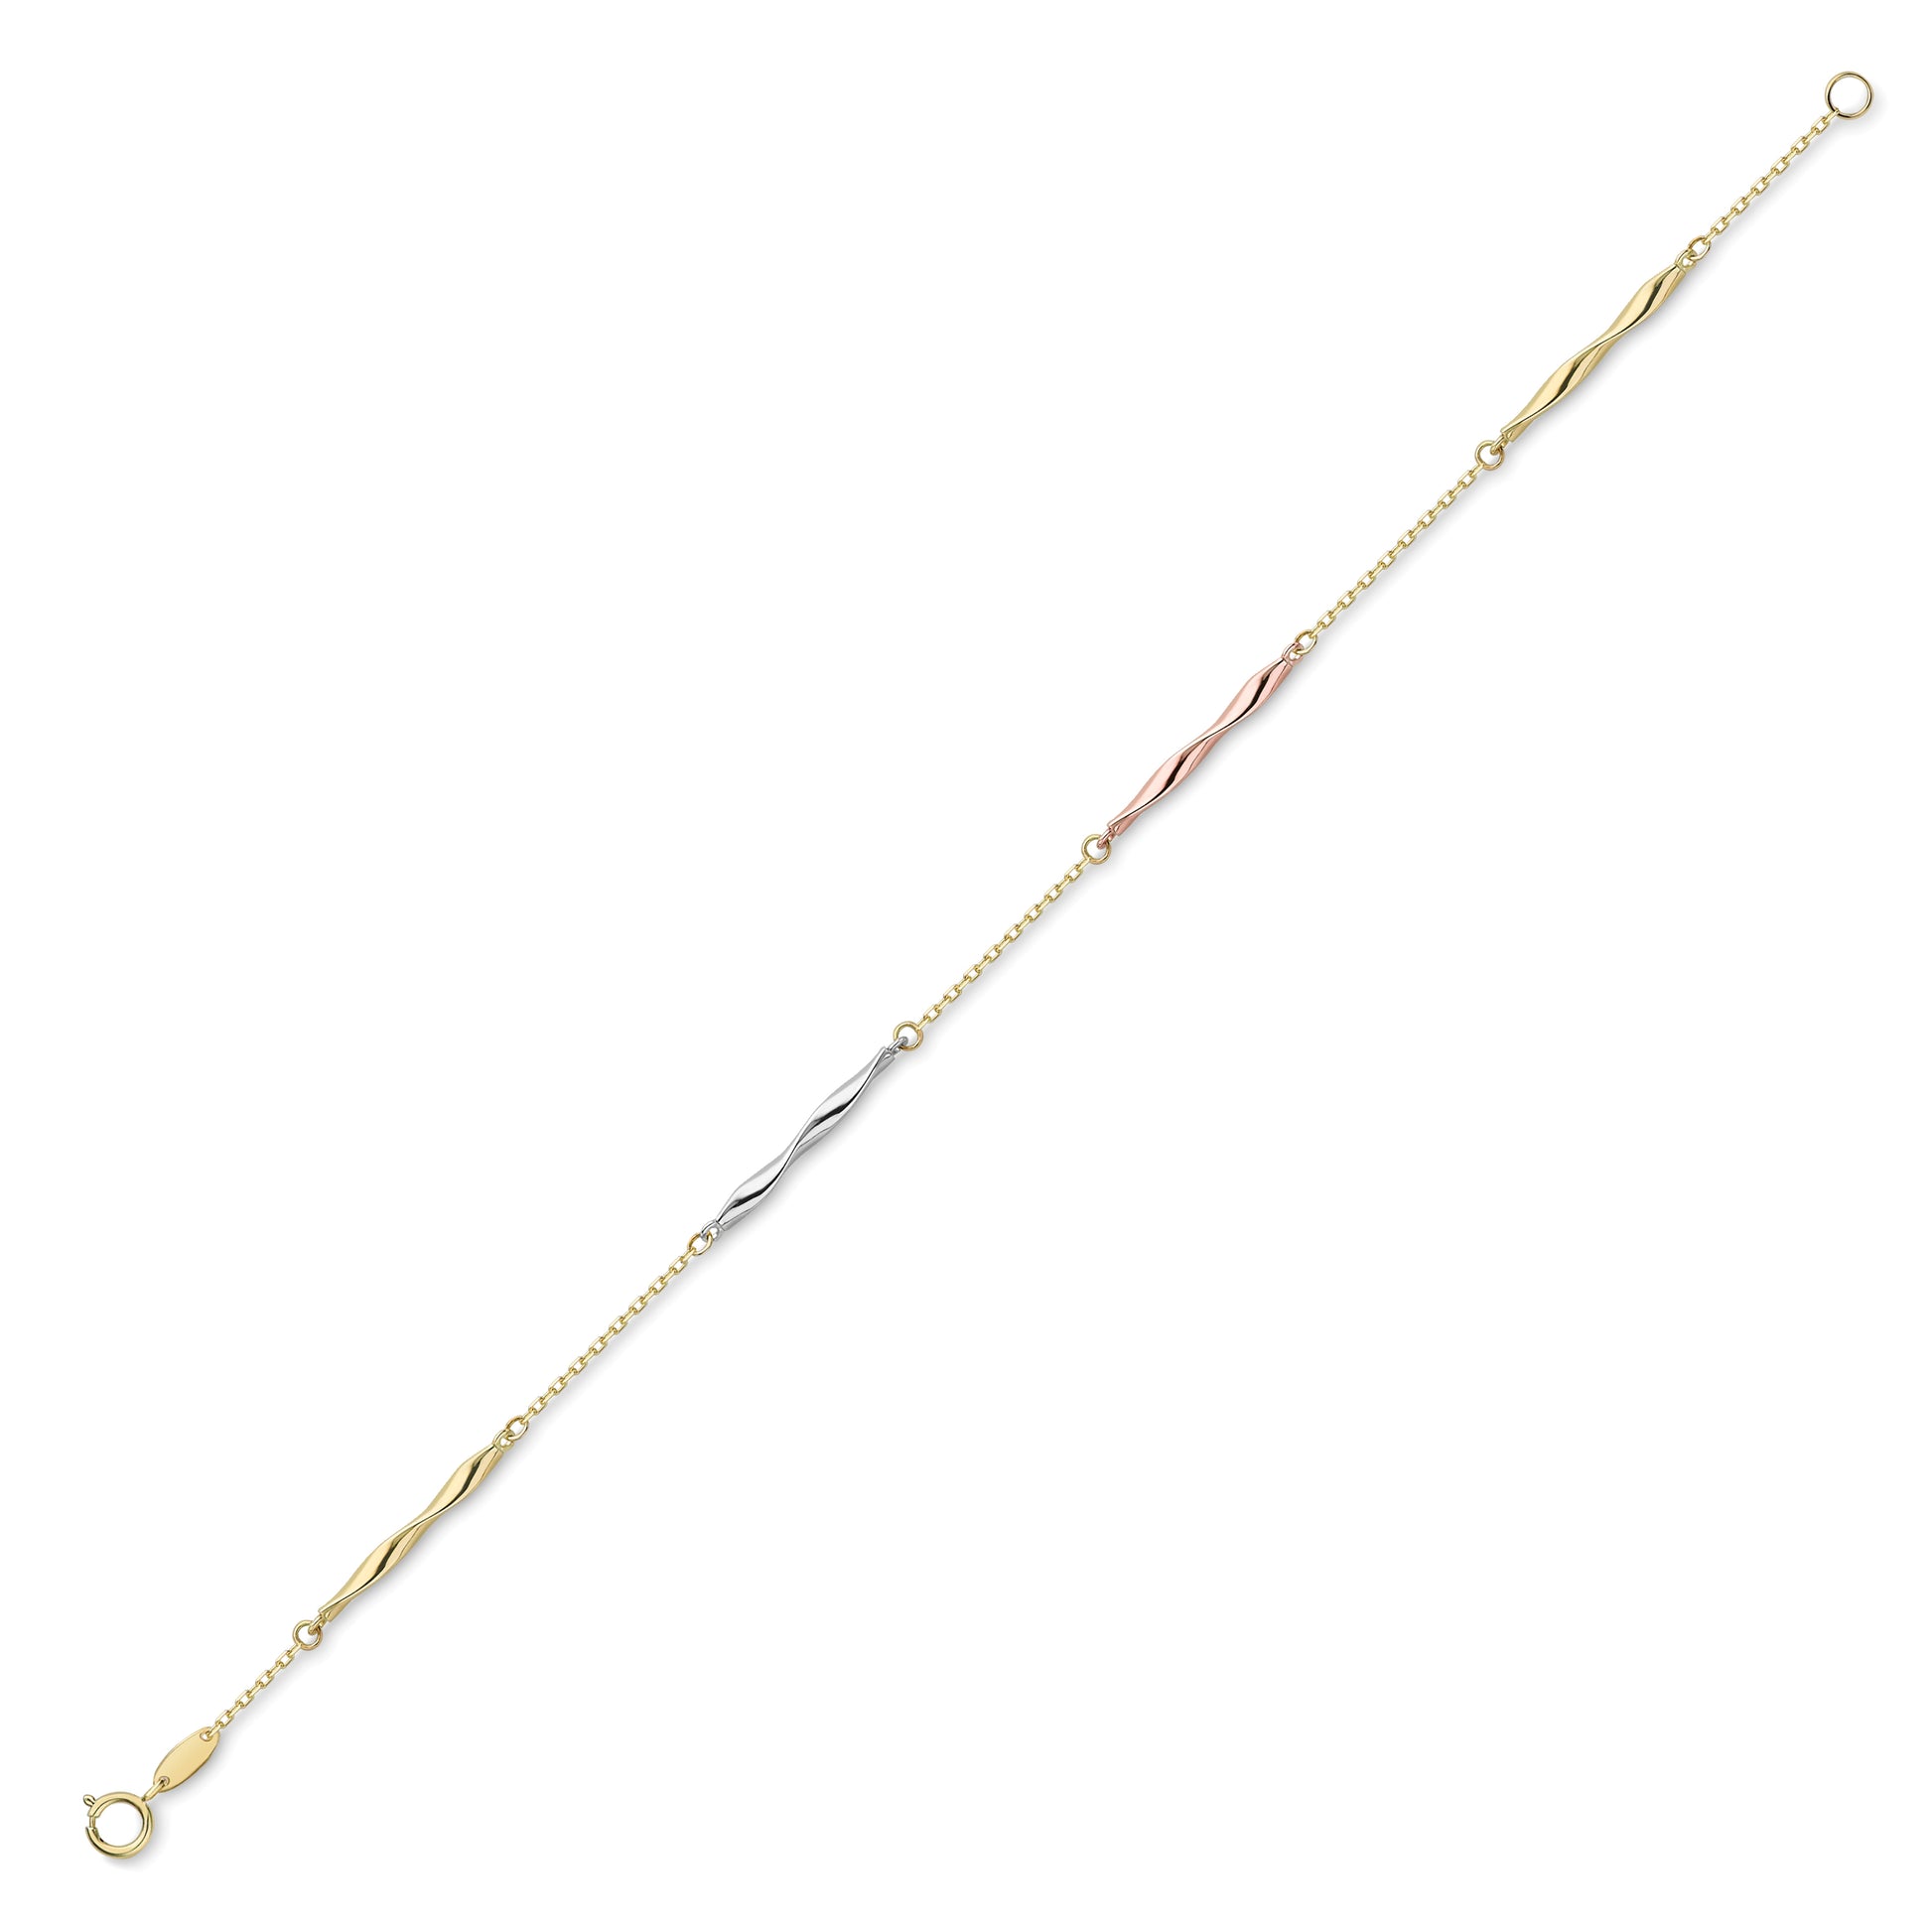 9ct 3 Colour Gold  Licorice Twist Trace Chain Bracelet 7.25" 18cm - CNNR02161-07